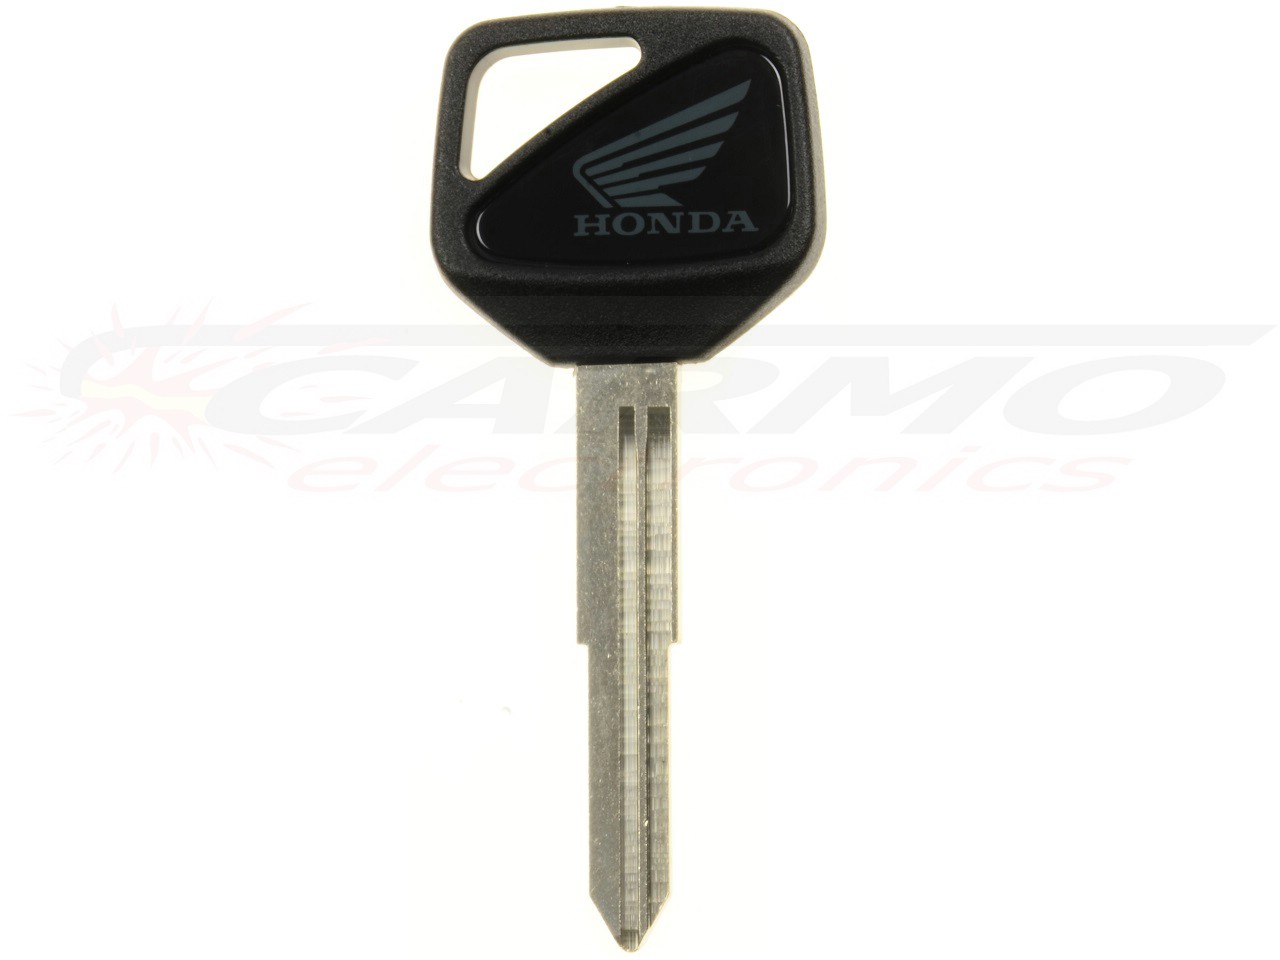 Chip chiave Honda nuovo new - (35121-MBW-601) - Clicca l'immagine per chiudere